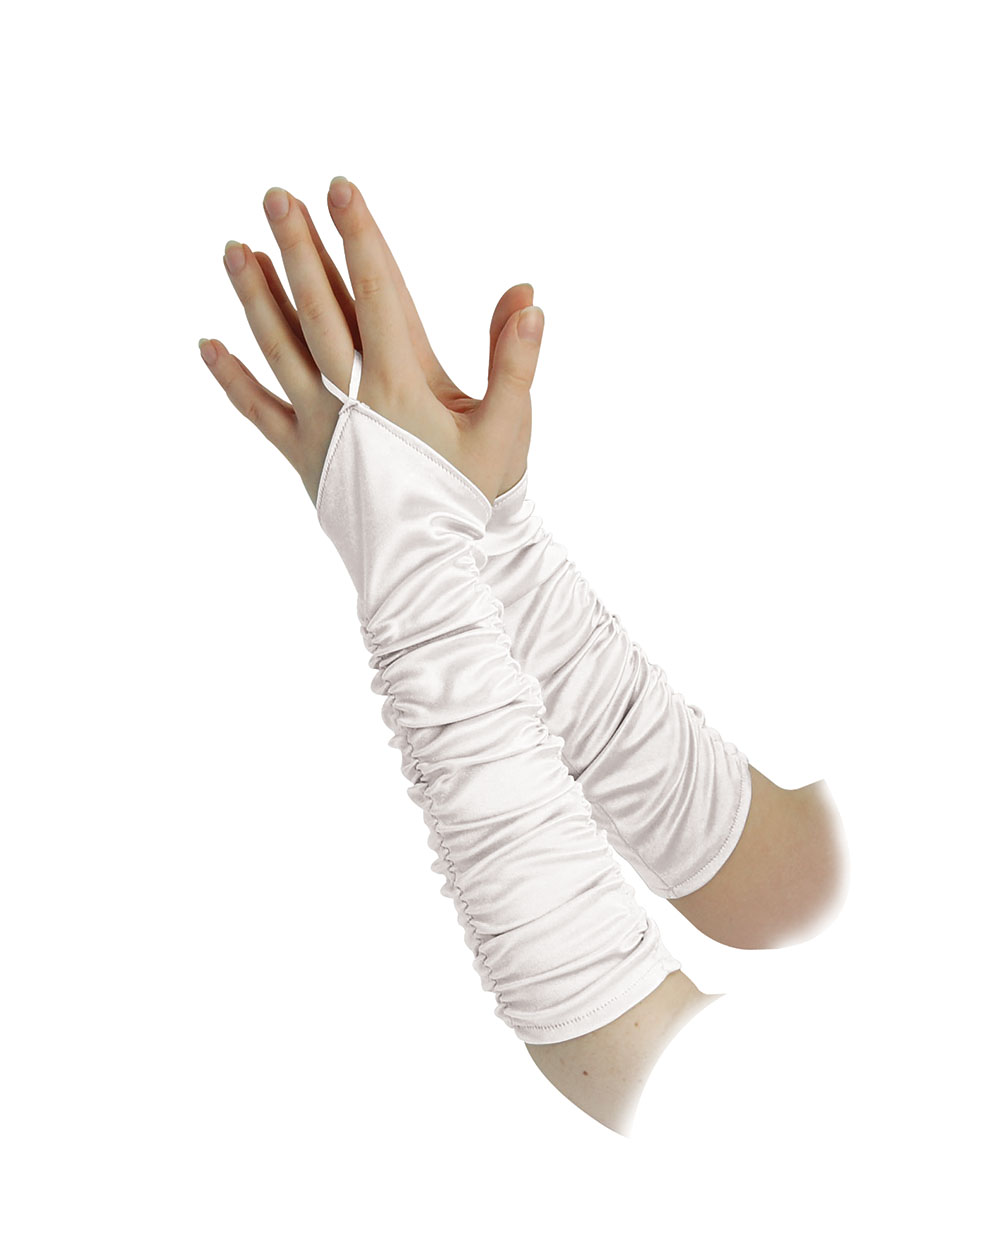 Fingerless Gloves 14" White Satin**SALE**